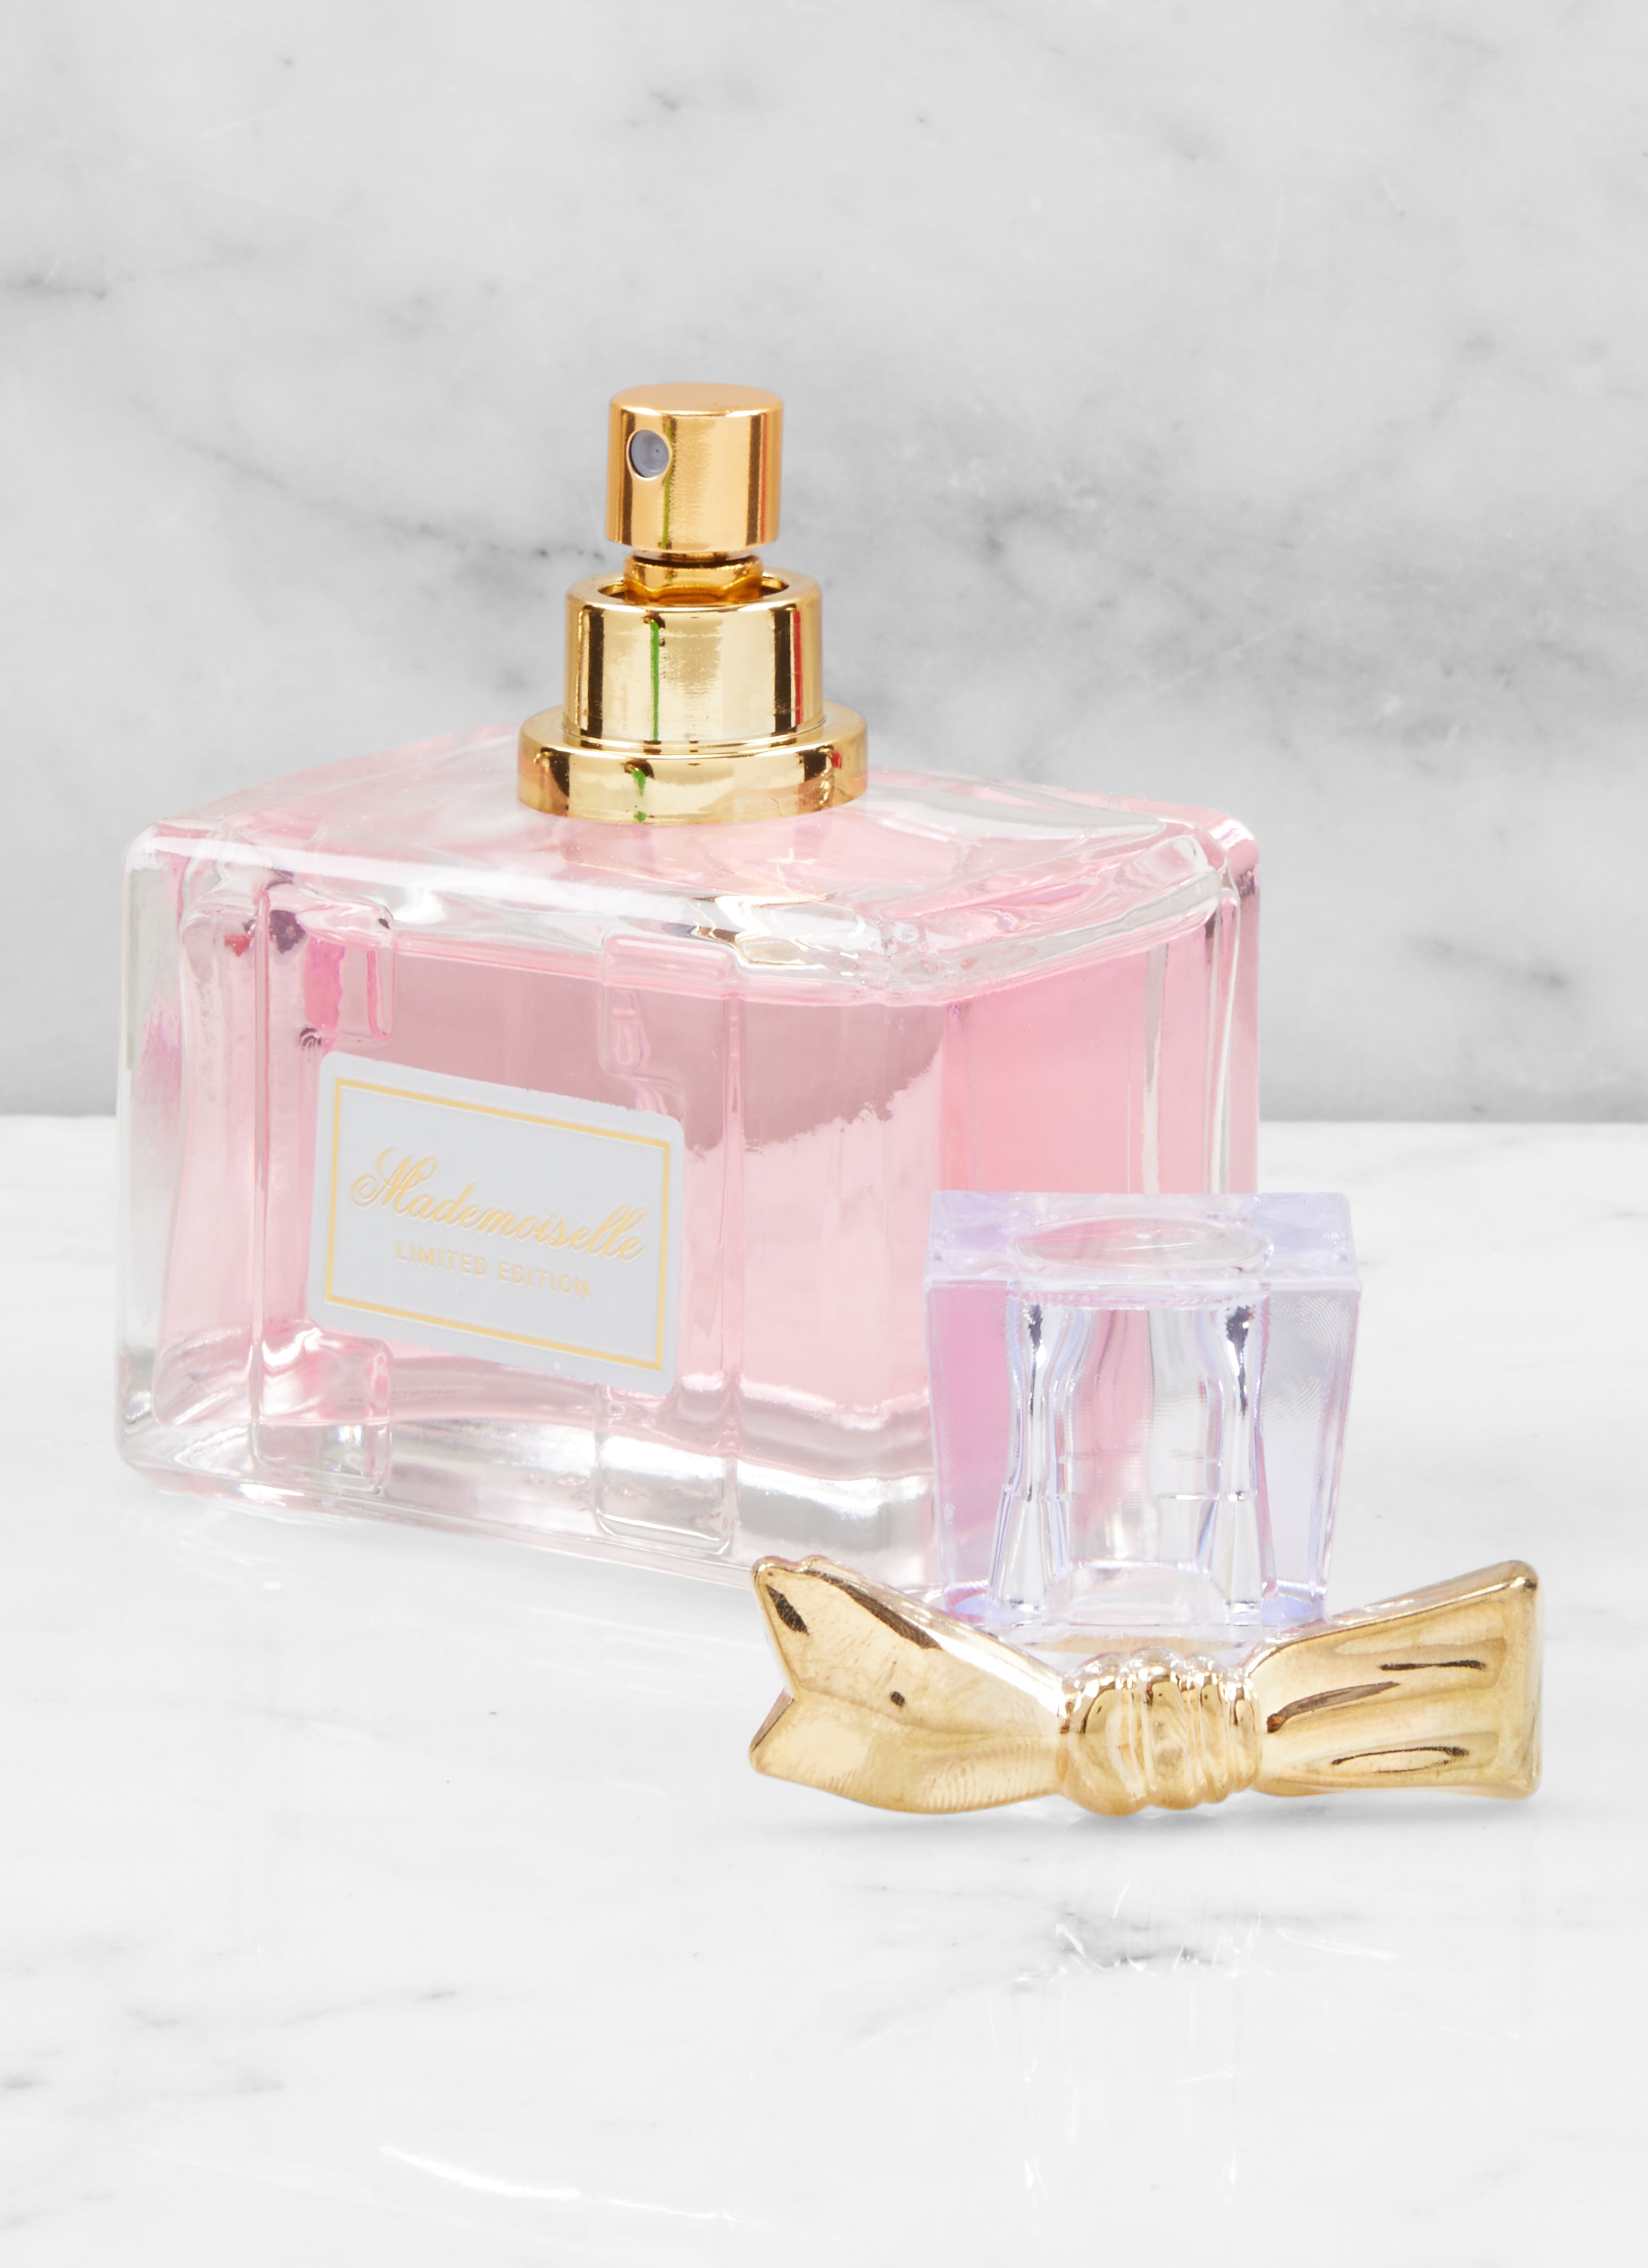 Mademoiselle Limited Edition Perfume